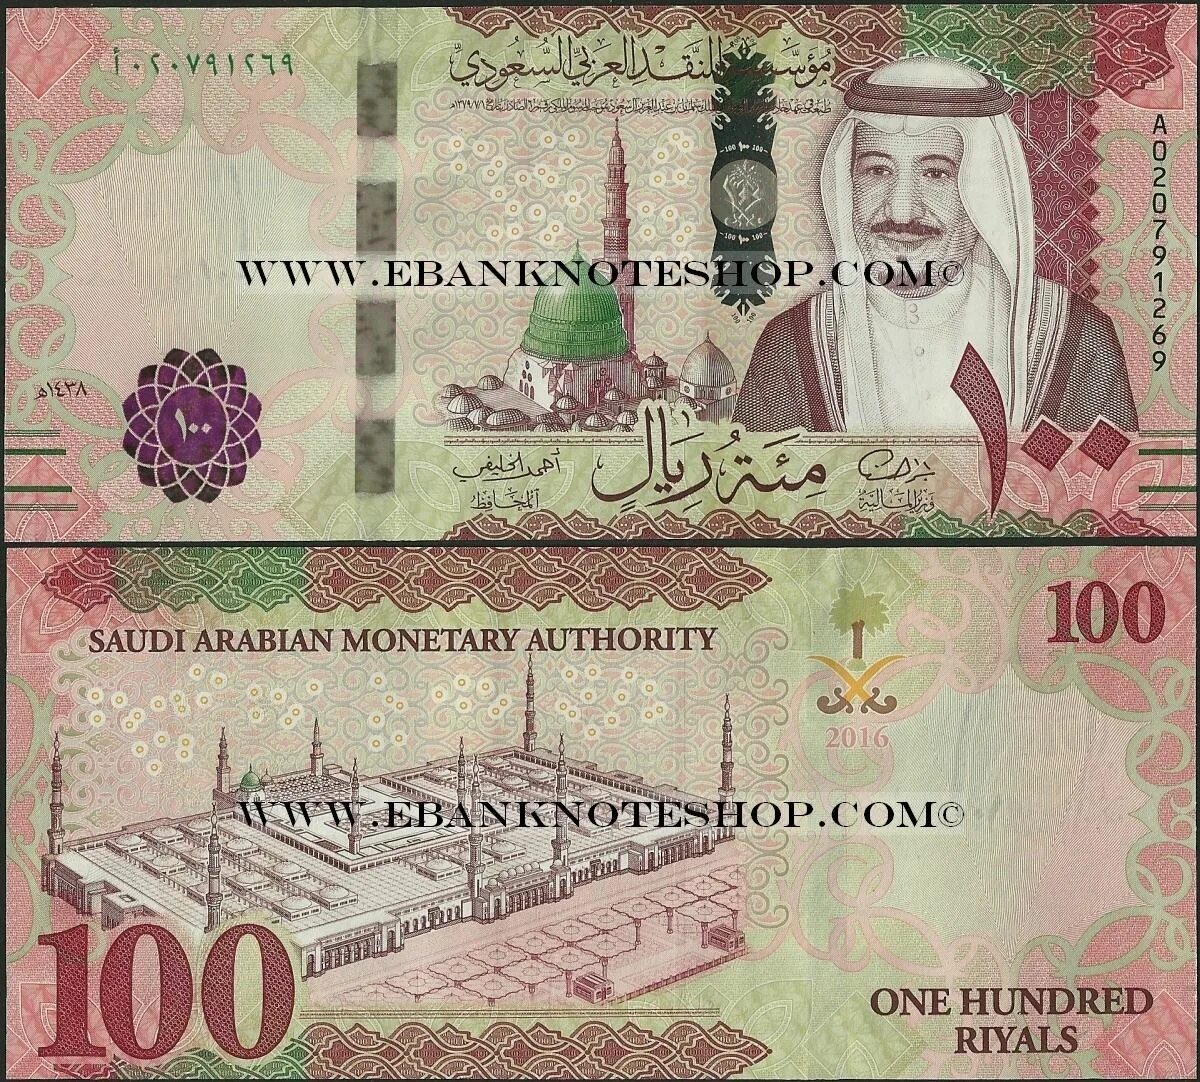 Валюта Сауд Аравия. Купюры Саудовской Аравии. Саудовский риал 100. Арабские купюры.